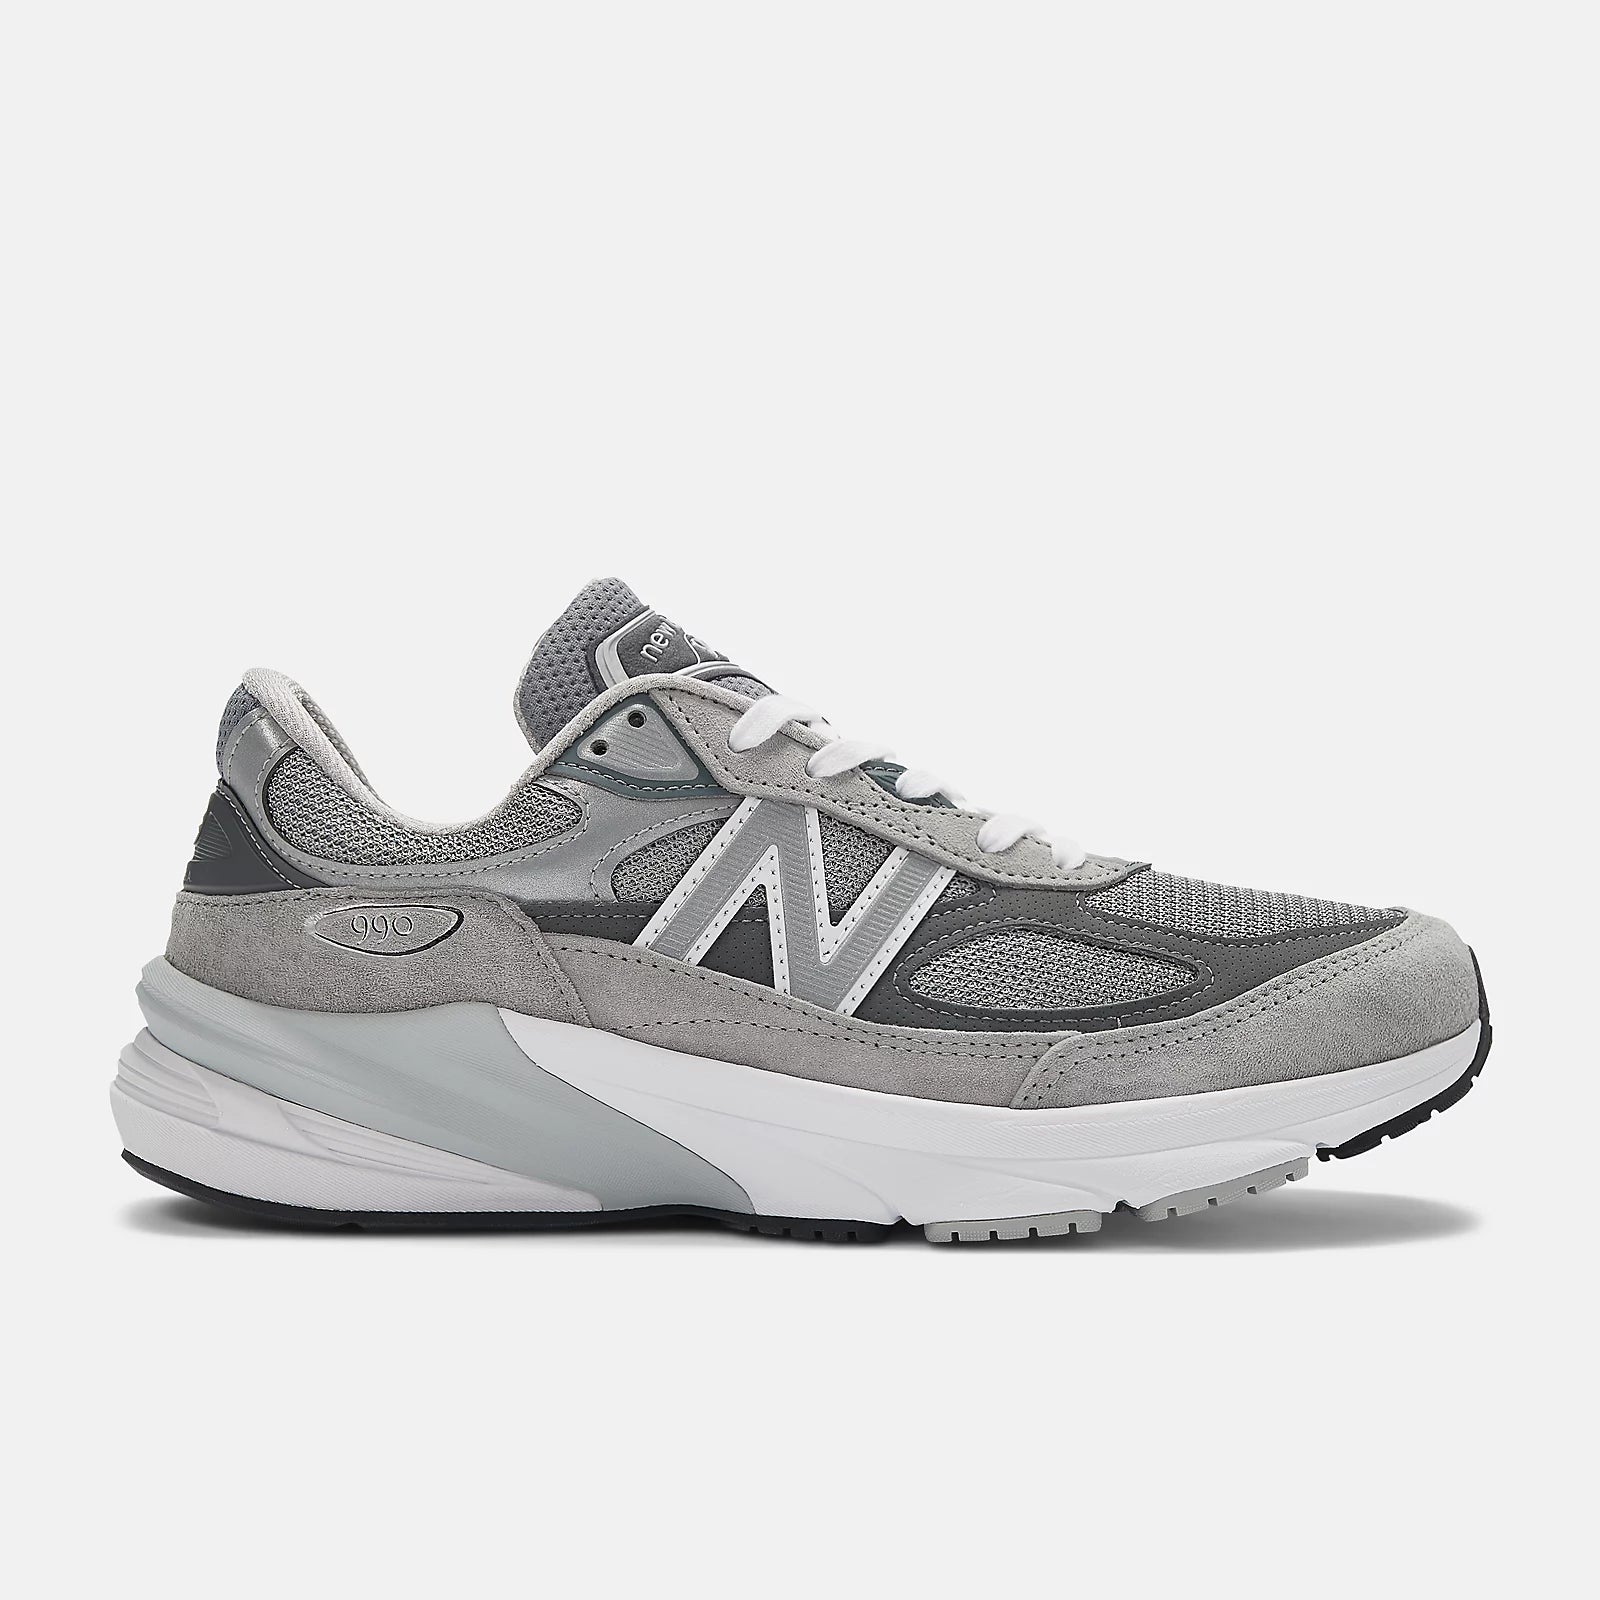 New Balance 990v6 (Women's) Grey